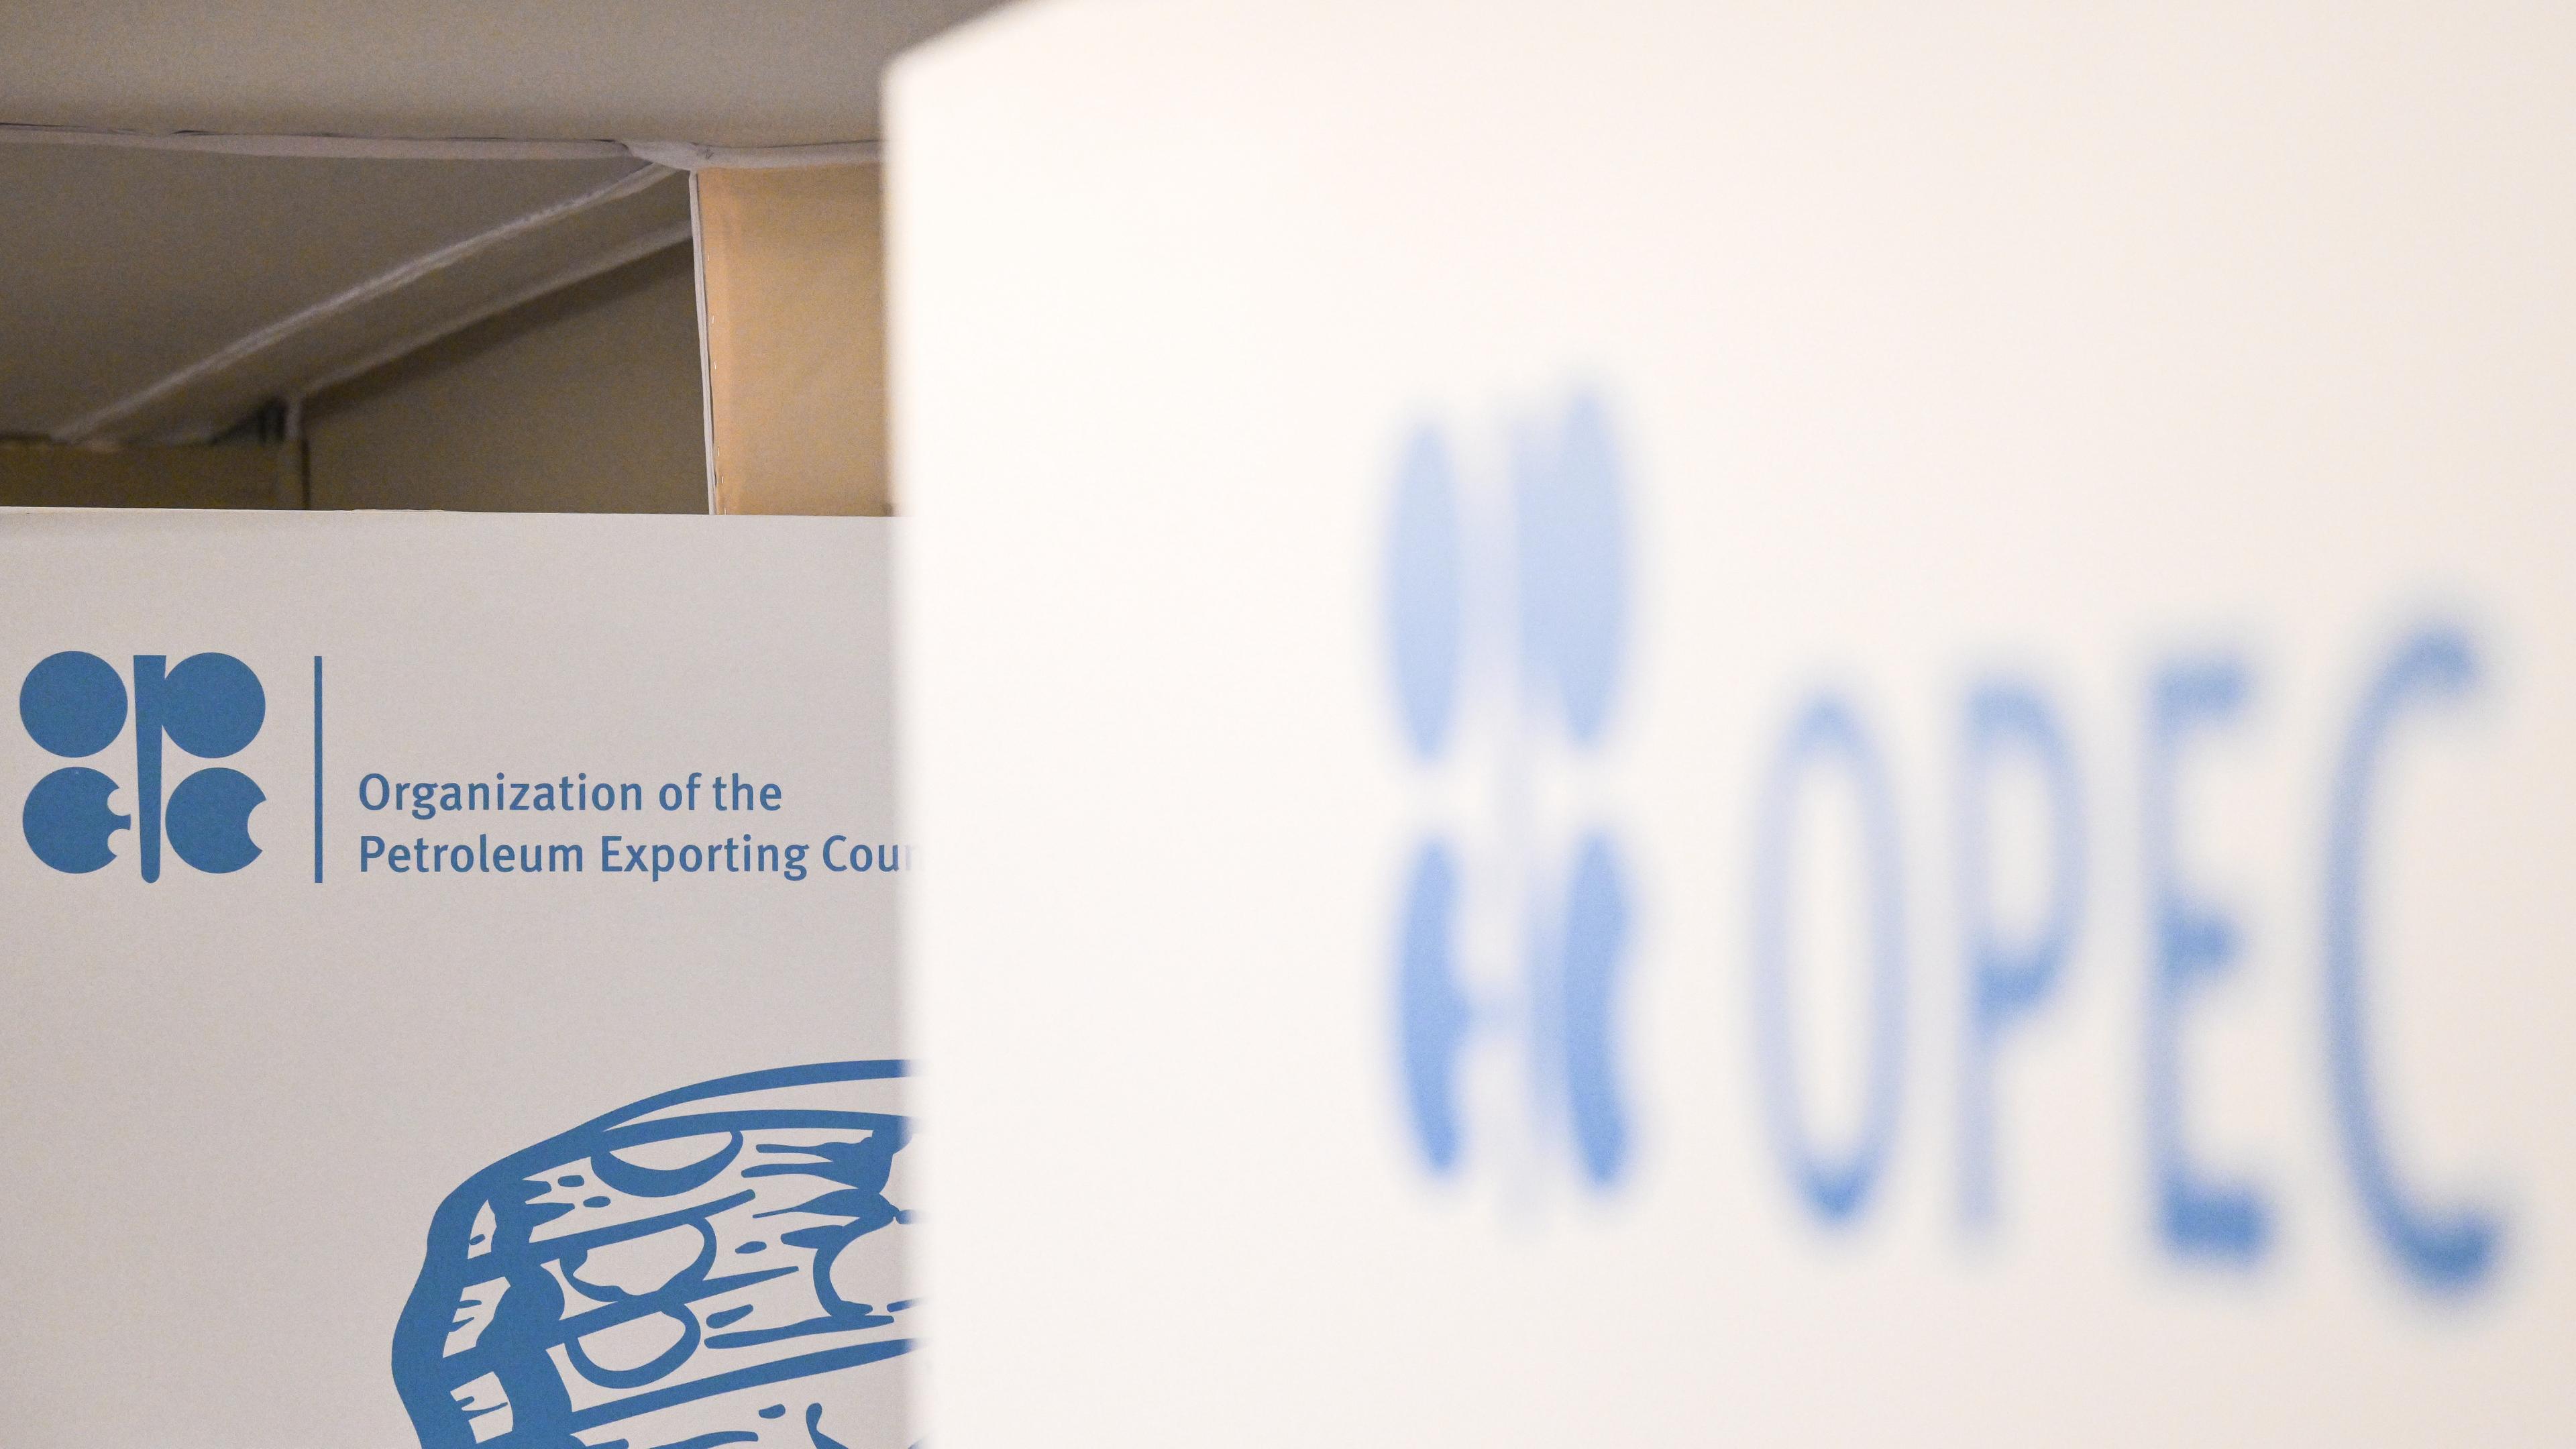 Vereinigte Arabische Emirate, Dubai: Blick auf den OPEC Pavillon auf dem COP28 Gelände. Hauptthemen der UN-Klimakonferenz in diesem Jahr sind unter anderem die Finanzierung für die vom Klimawandel verursachten Schäden.